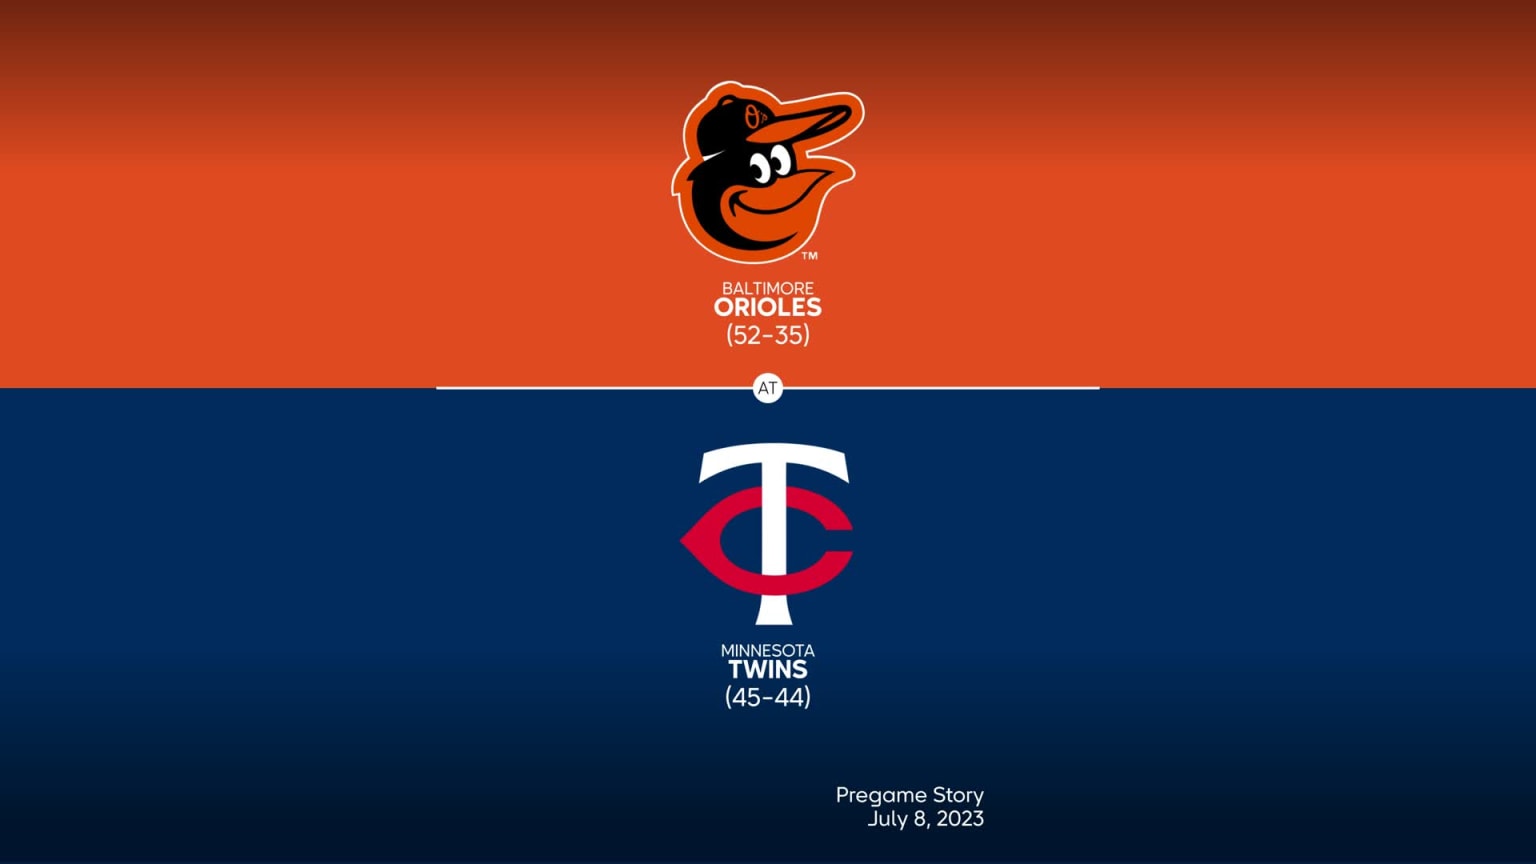 Orioles vs. Twins, July 8